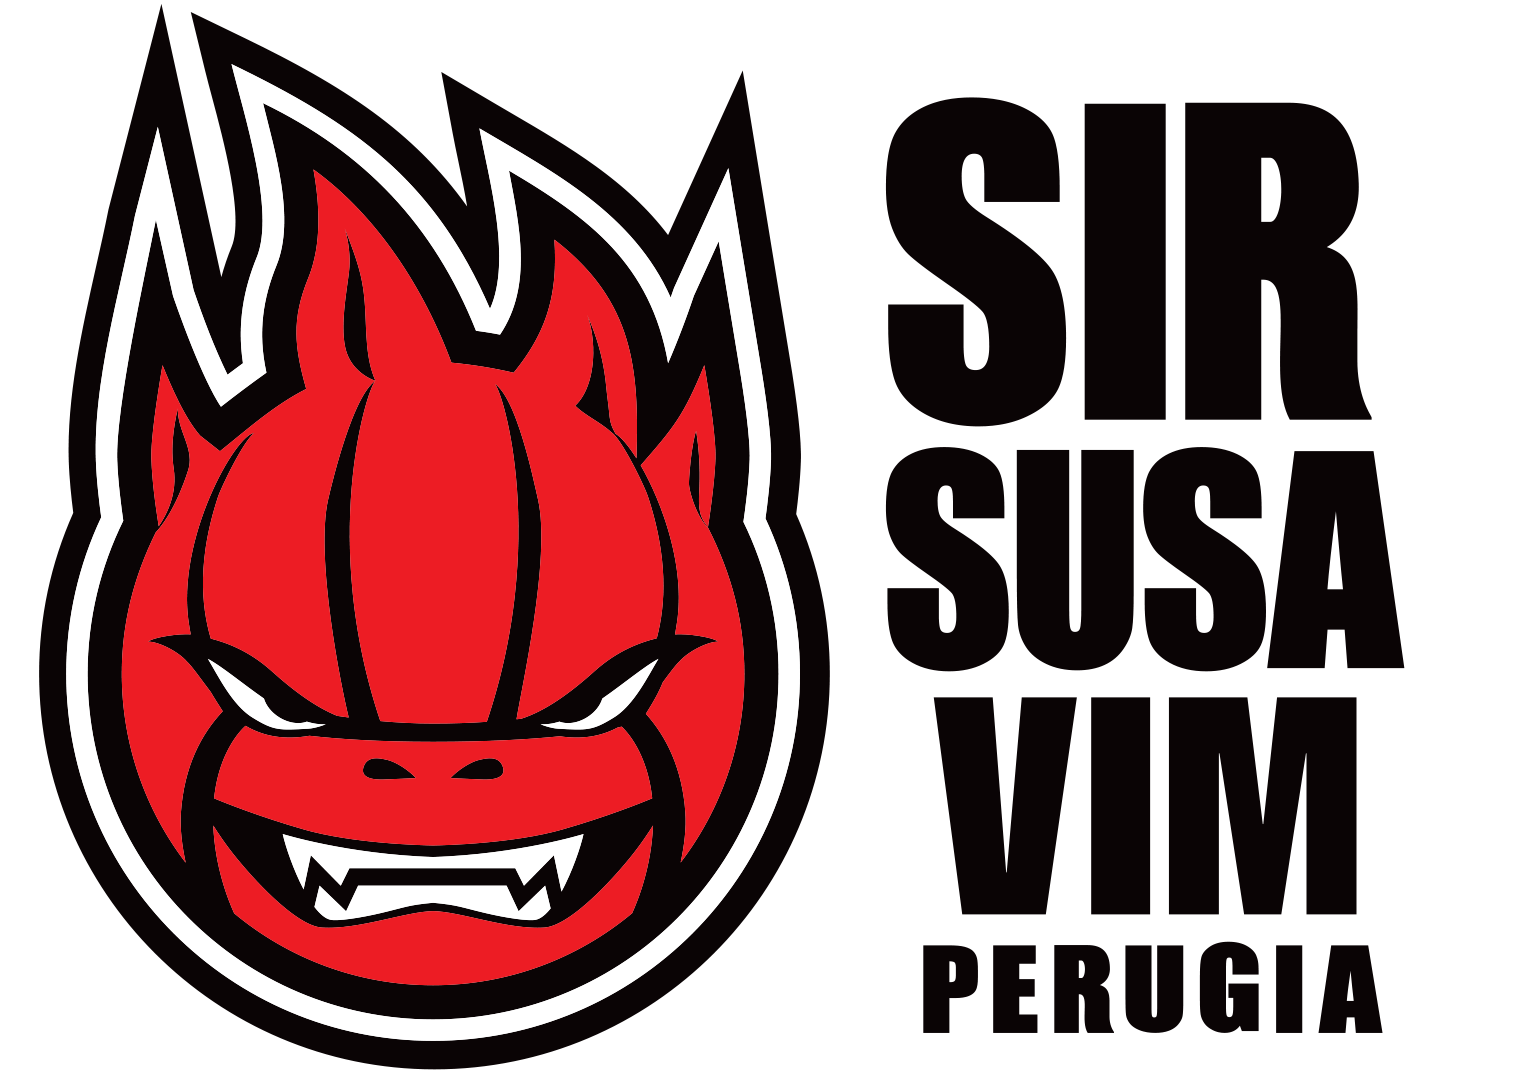 sir-perugia-logo